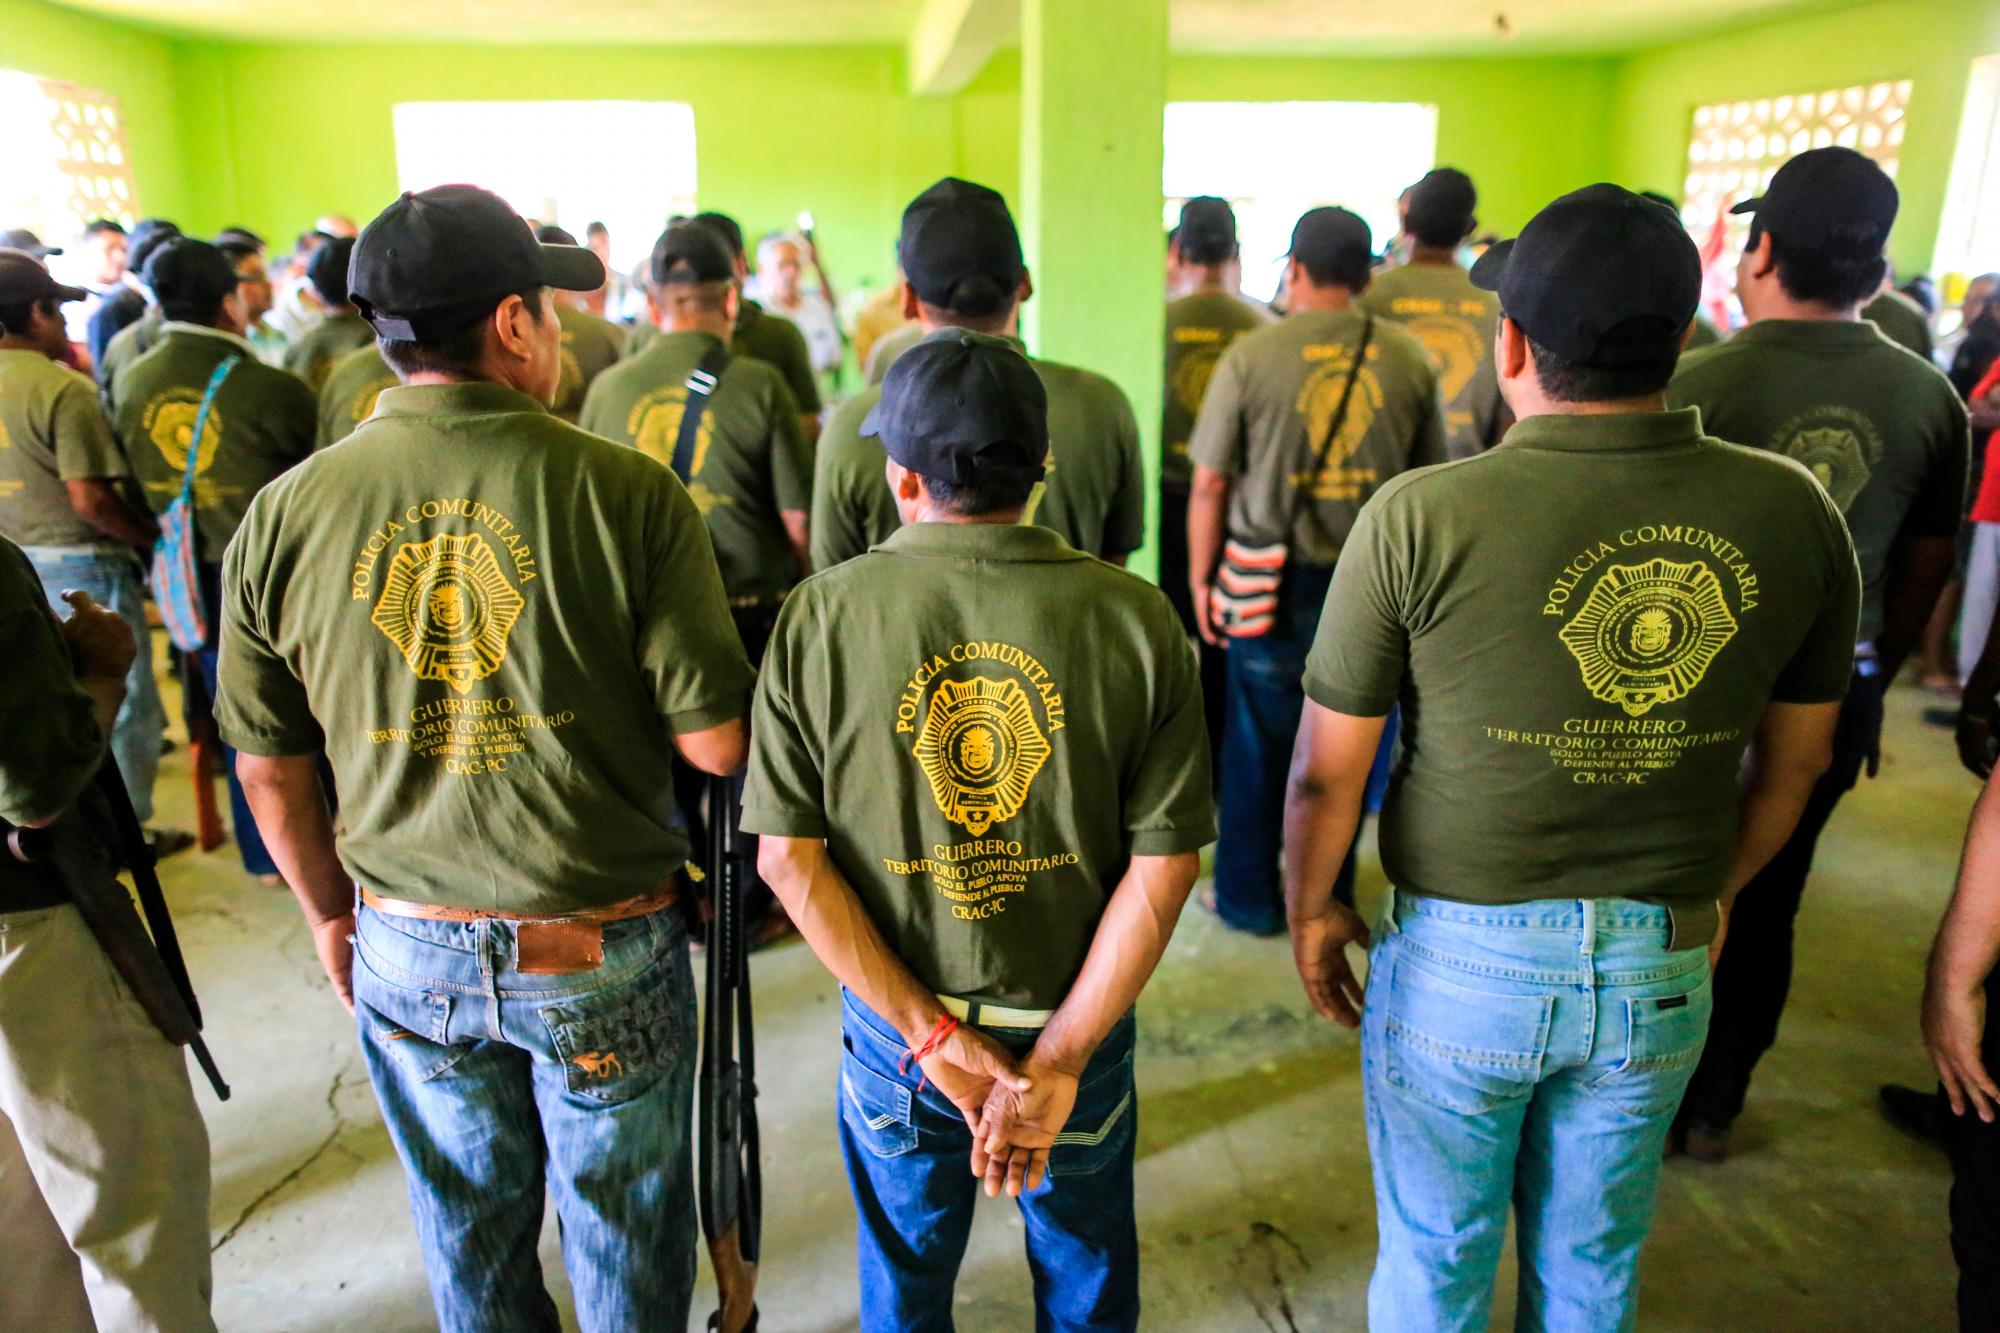  Integrantes de la Policía Comunitaria de la Coordinadora Regional de Autoridades Comunitarias (CRAC) conmemoraron hoy el primer aniversario luctuoso de cinco de sus integrantes  asesinados, junto a otras seis personas en 2018, en el poblado de La Concepción, en la zona rural de Acapulco, en el sureño estado de Guerrero.